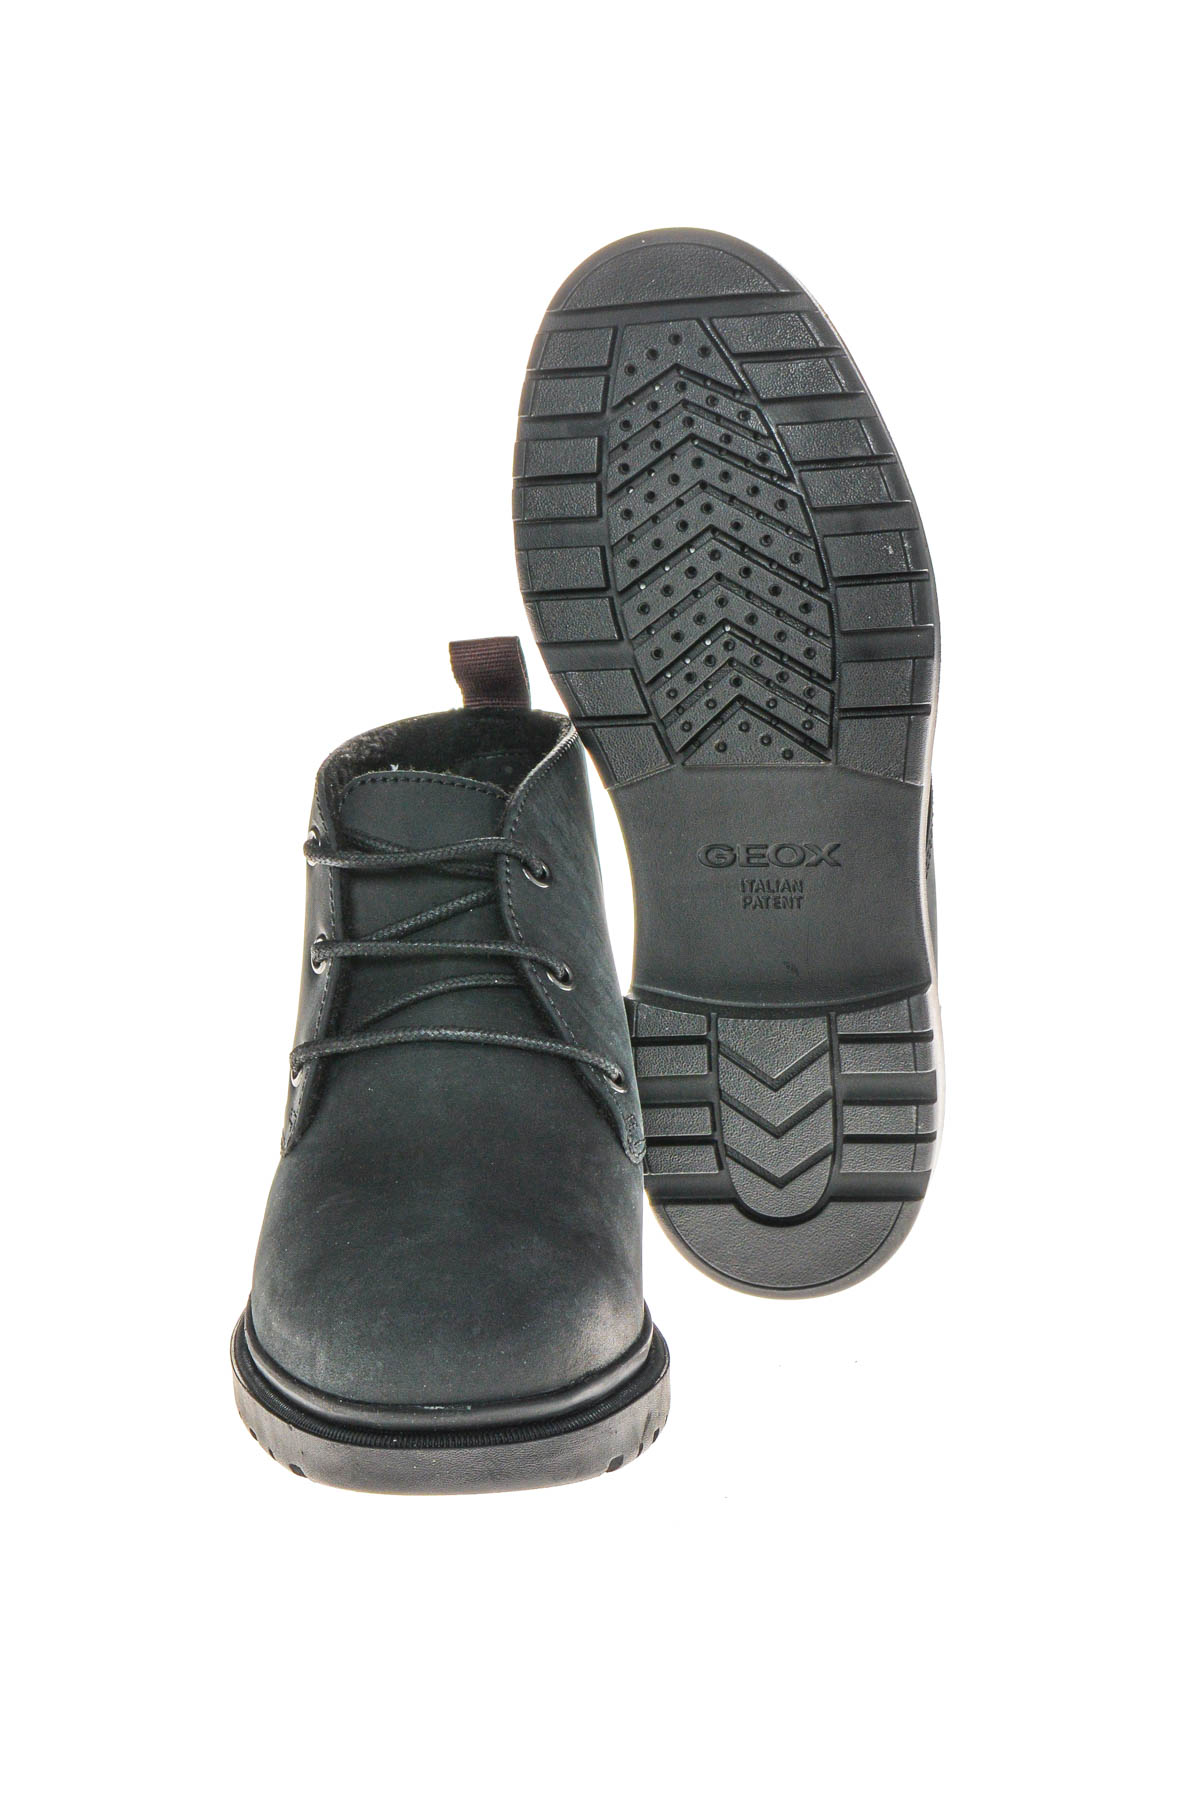 Men's boots - GEOX - 3